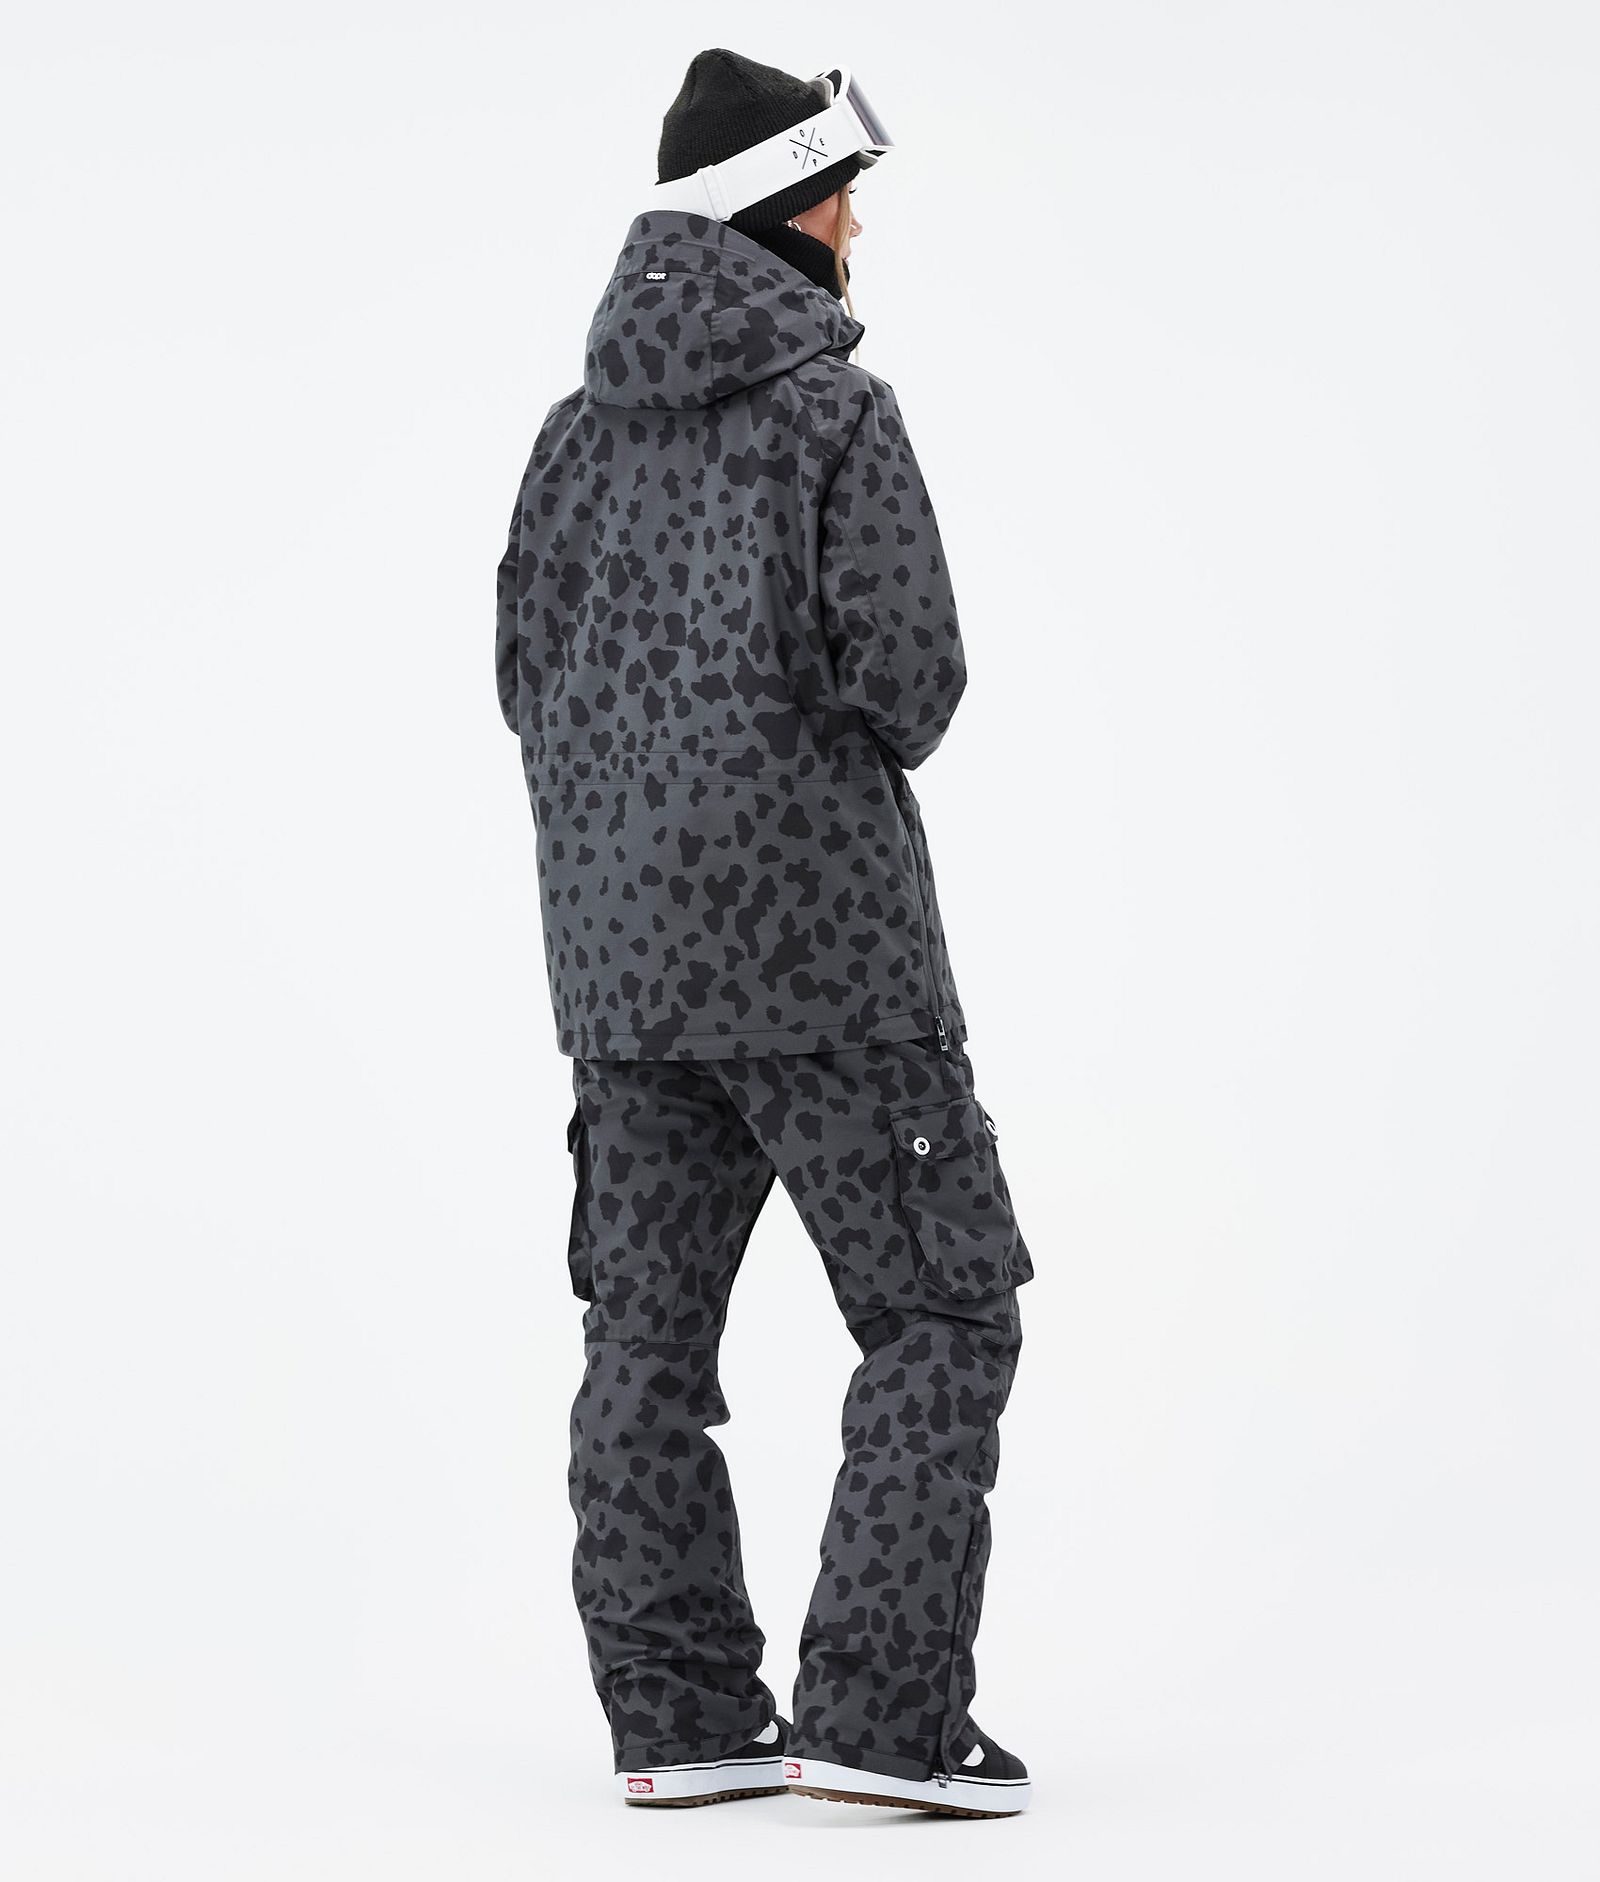 Annok W Outfit de Snowboard Mujer Dots Phantom